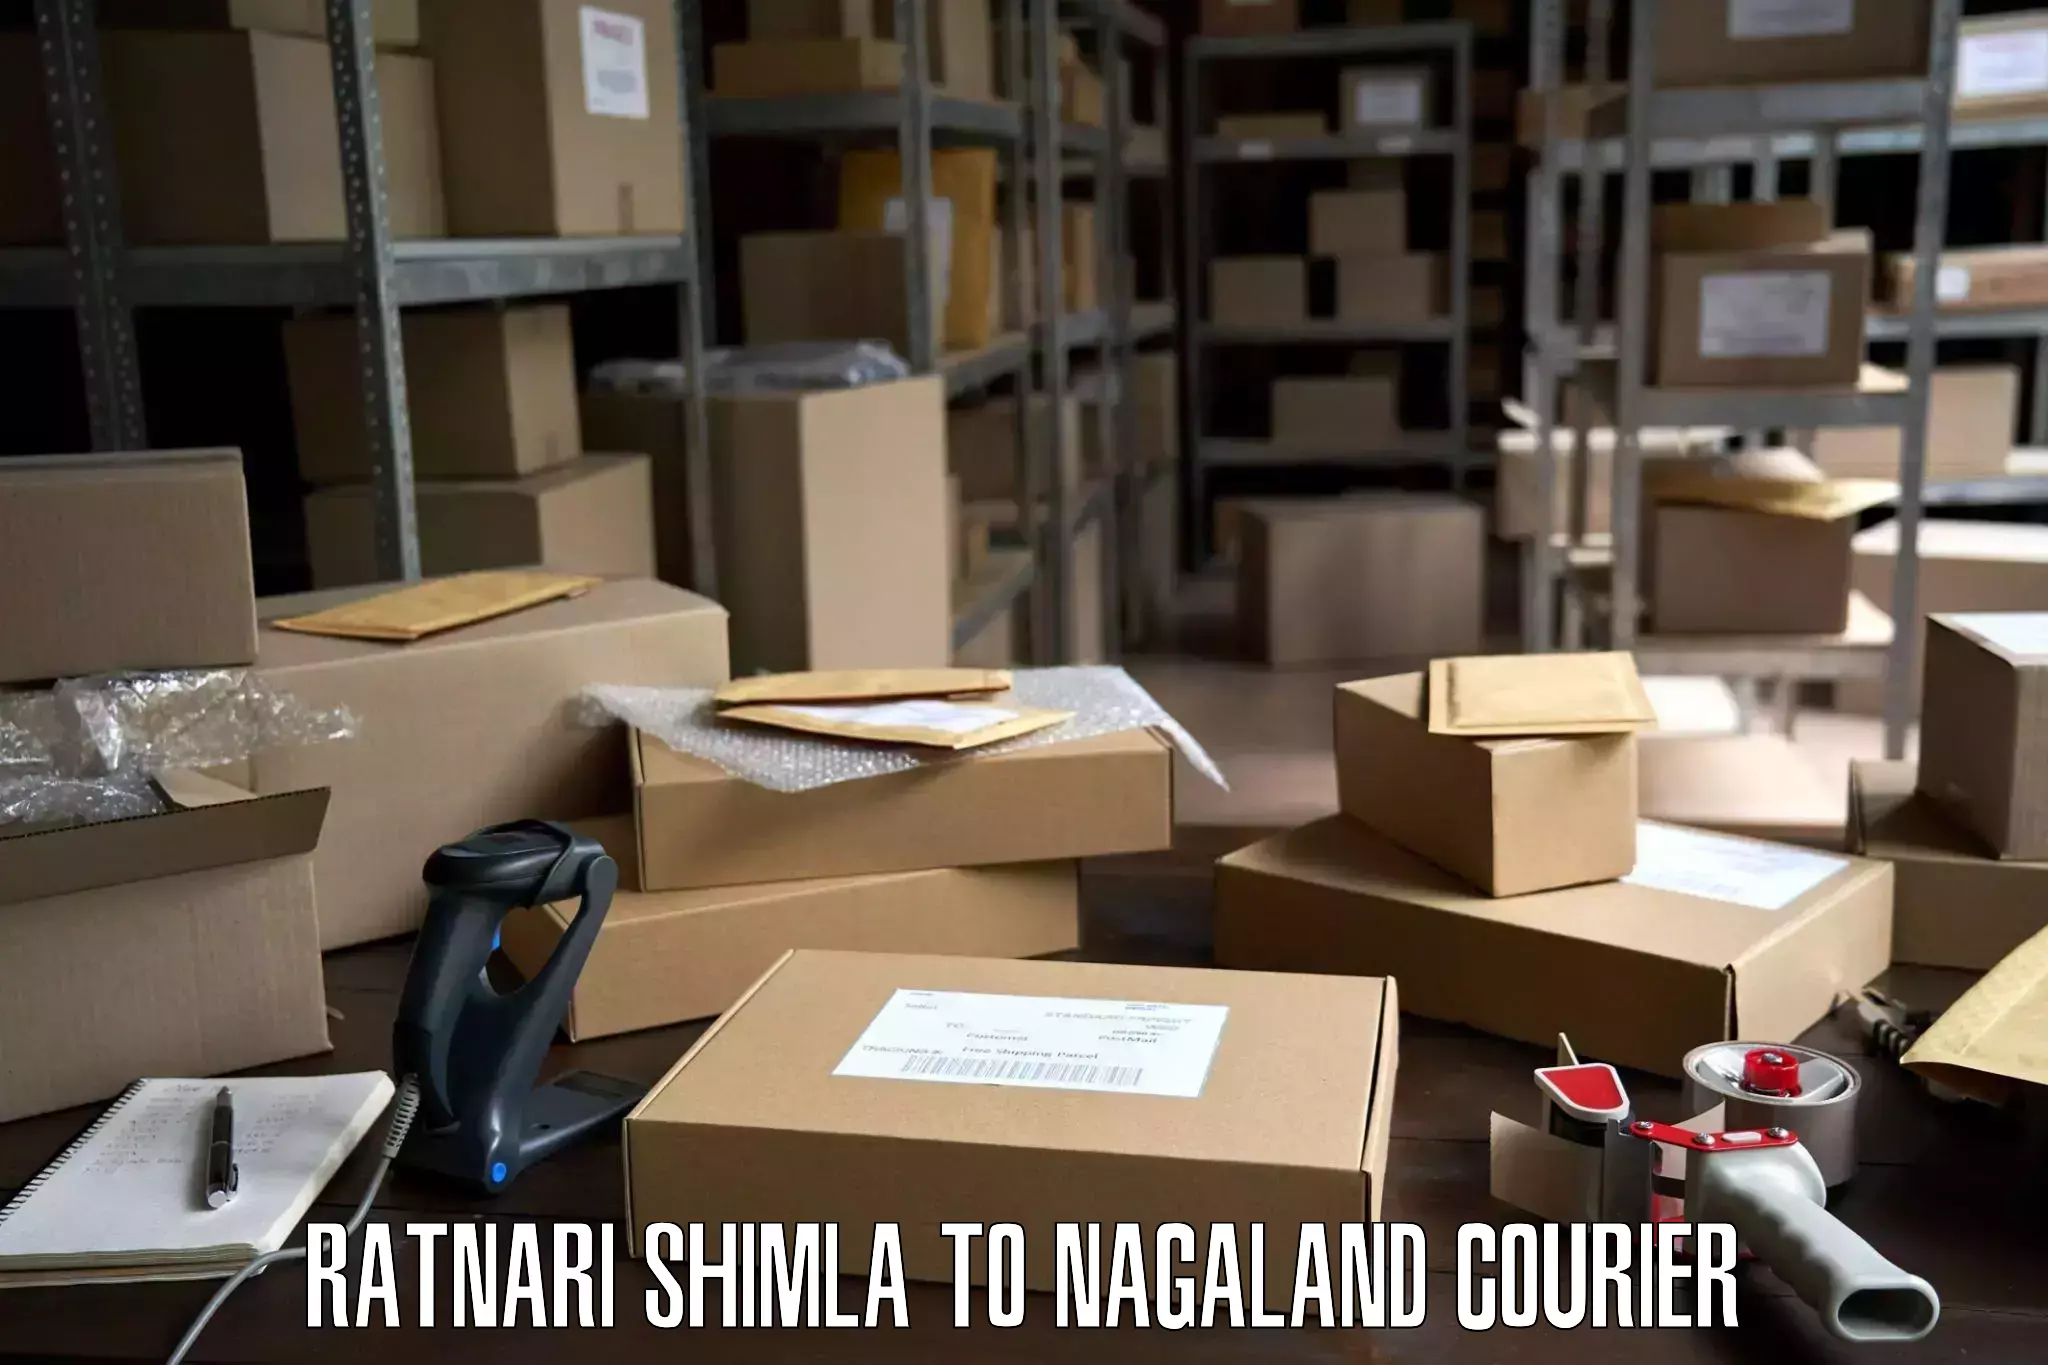 Furniture relocation experts Ratnari Shimla to Nagaland